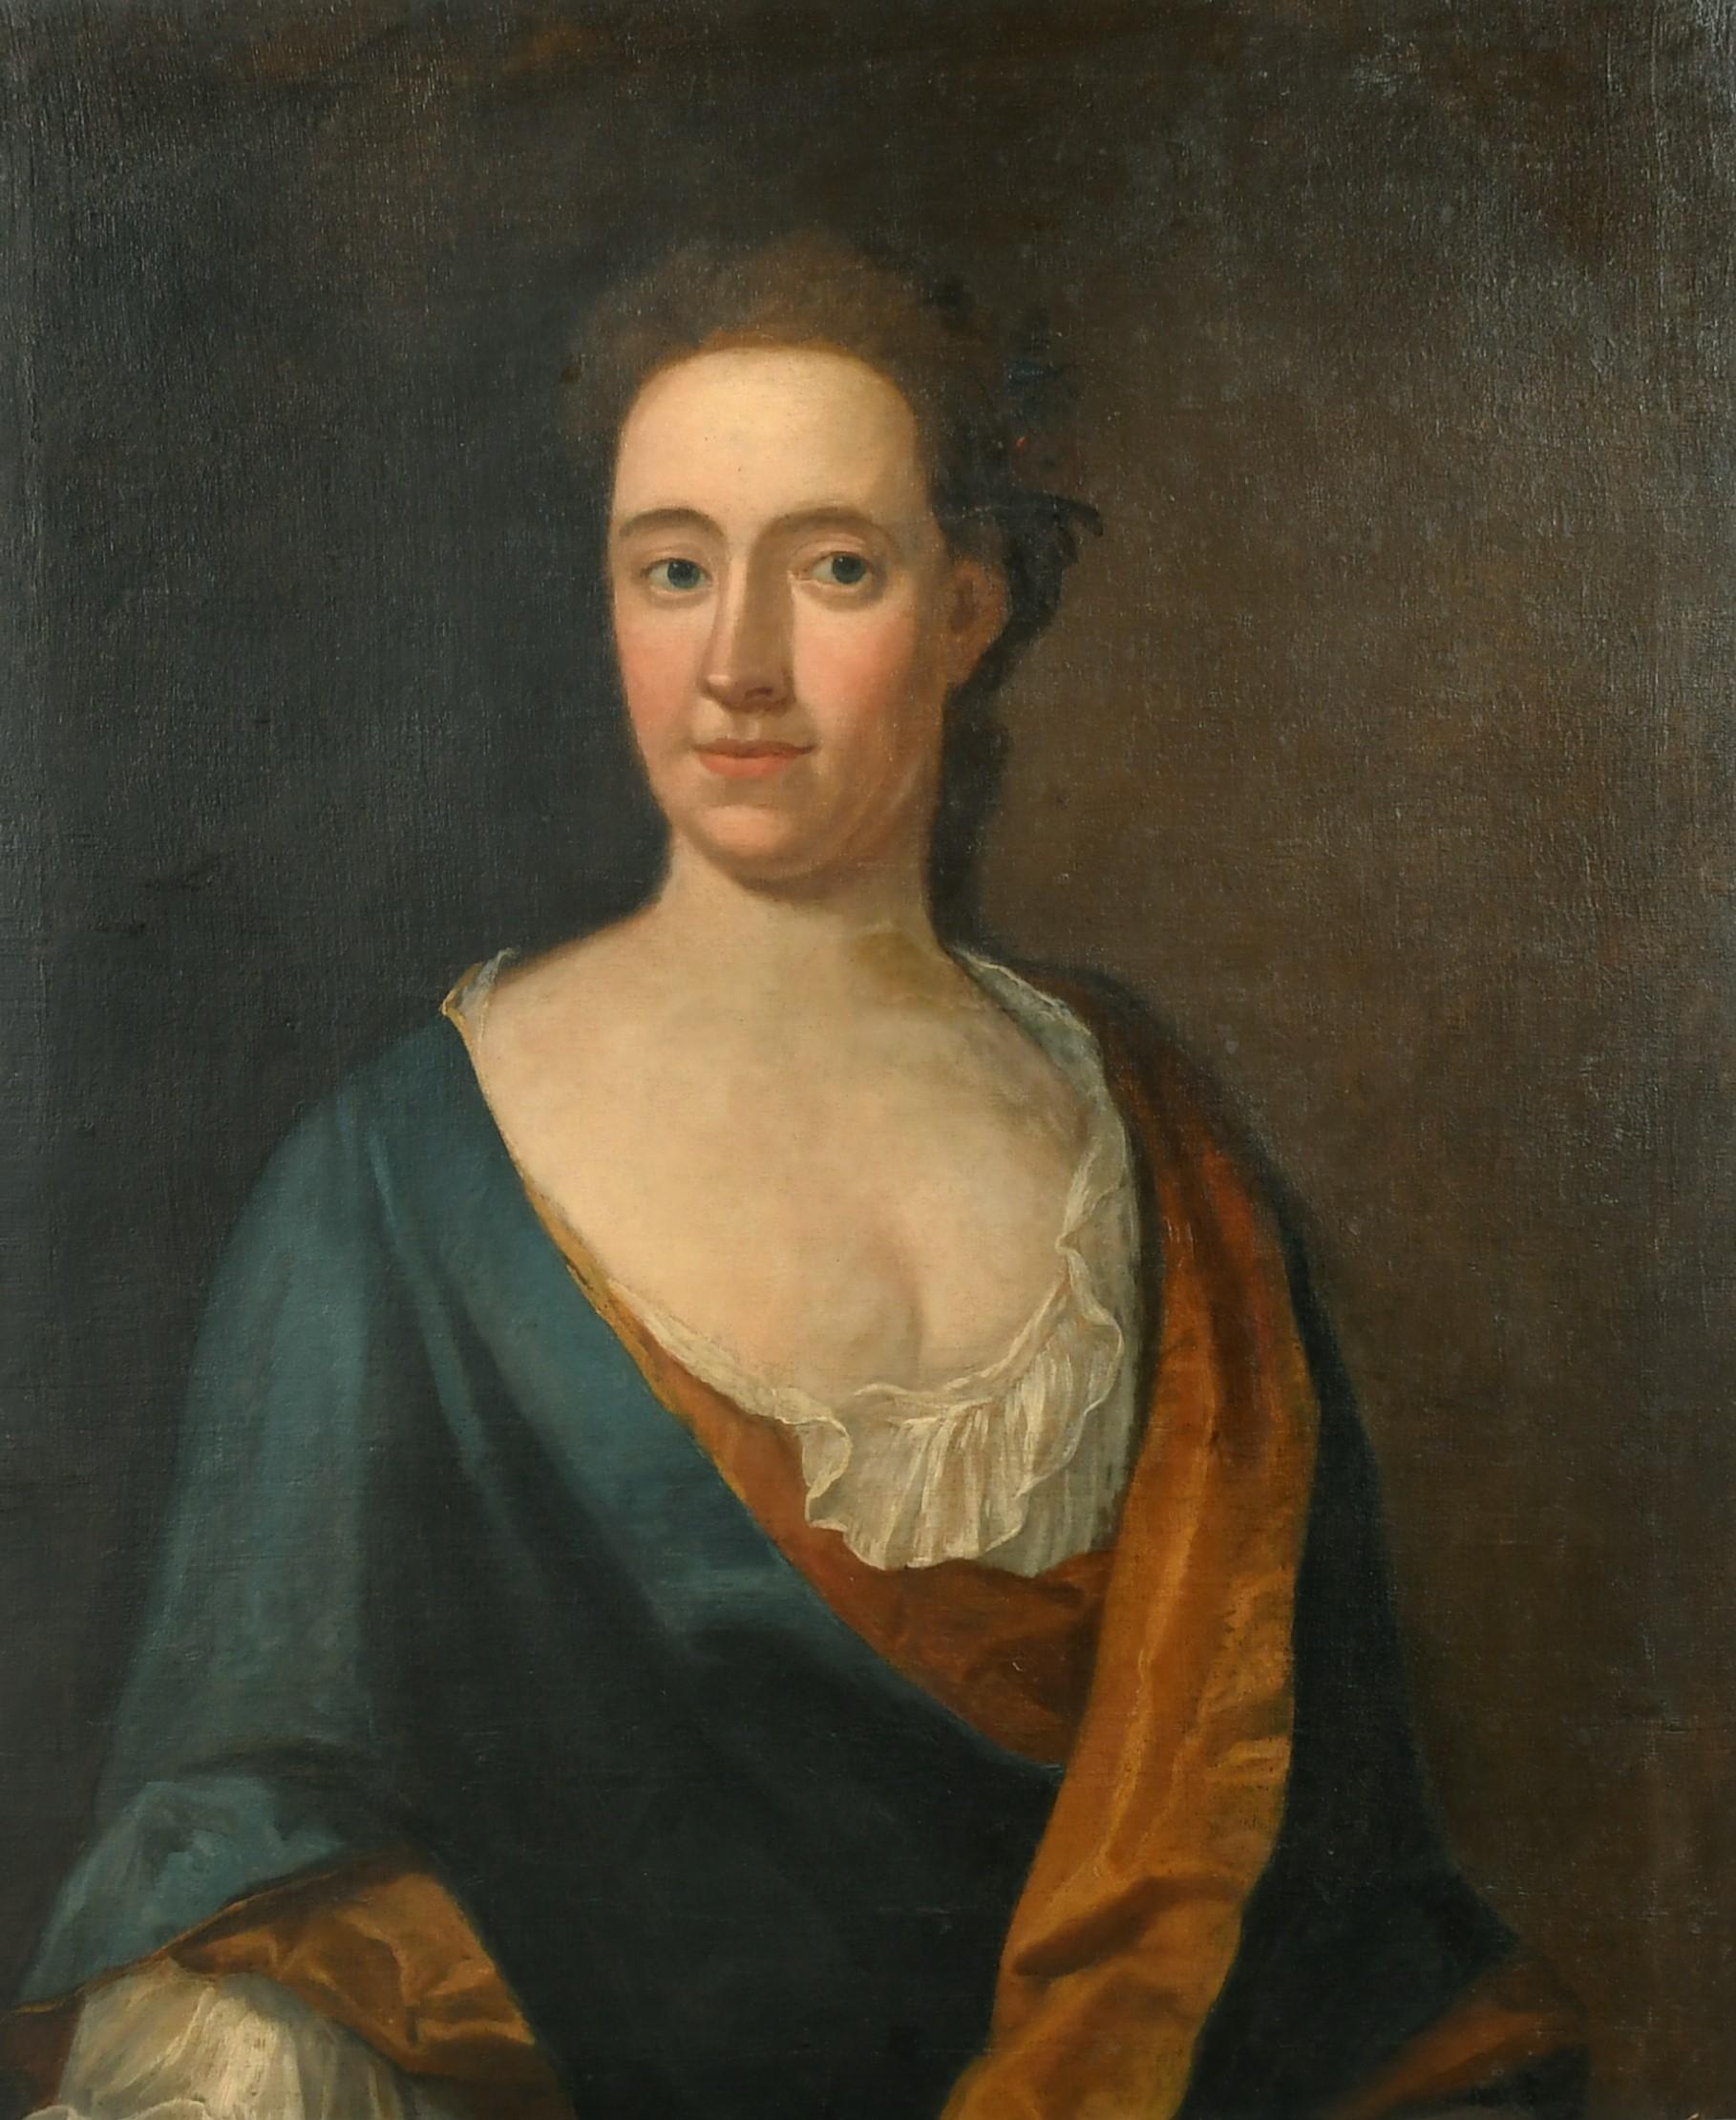 Portrait britannique du 18ème siècle d'une dame aristocrate, grande peinture à l'huile - Painting de Circle of Thomas Hudson (1701-1779) 